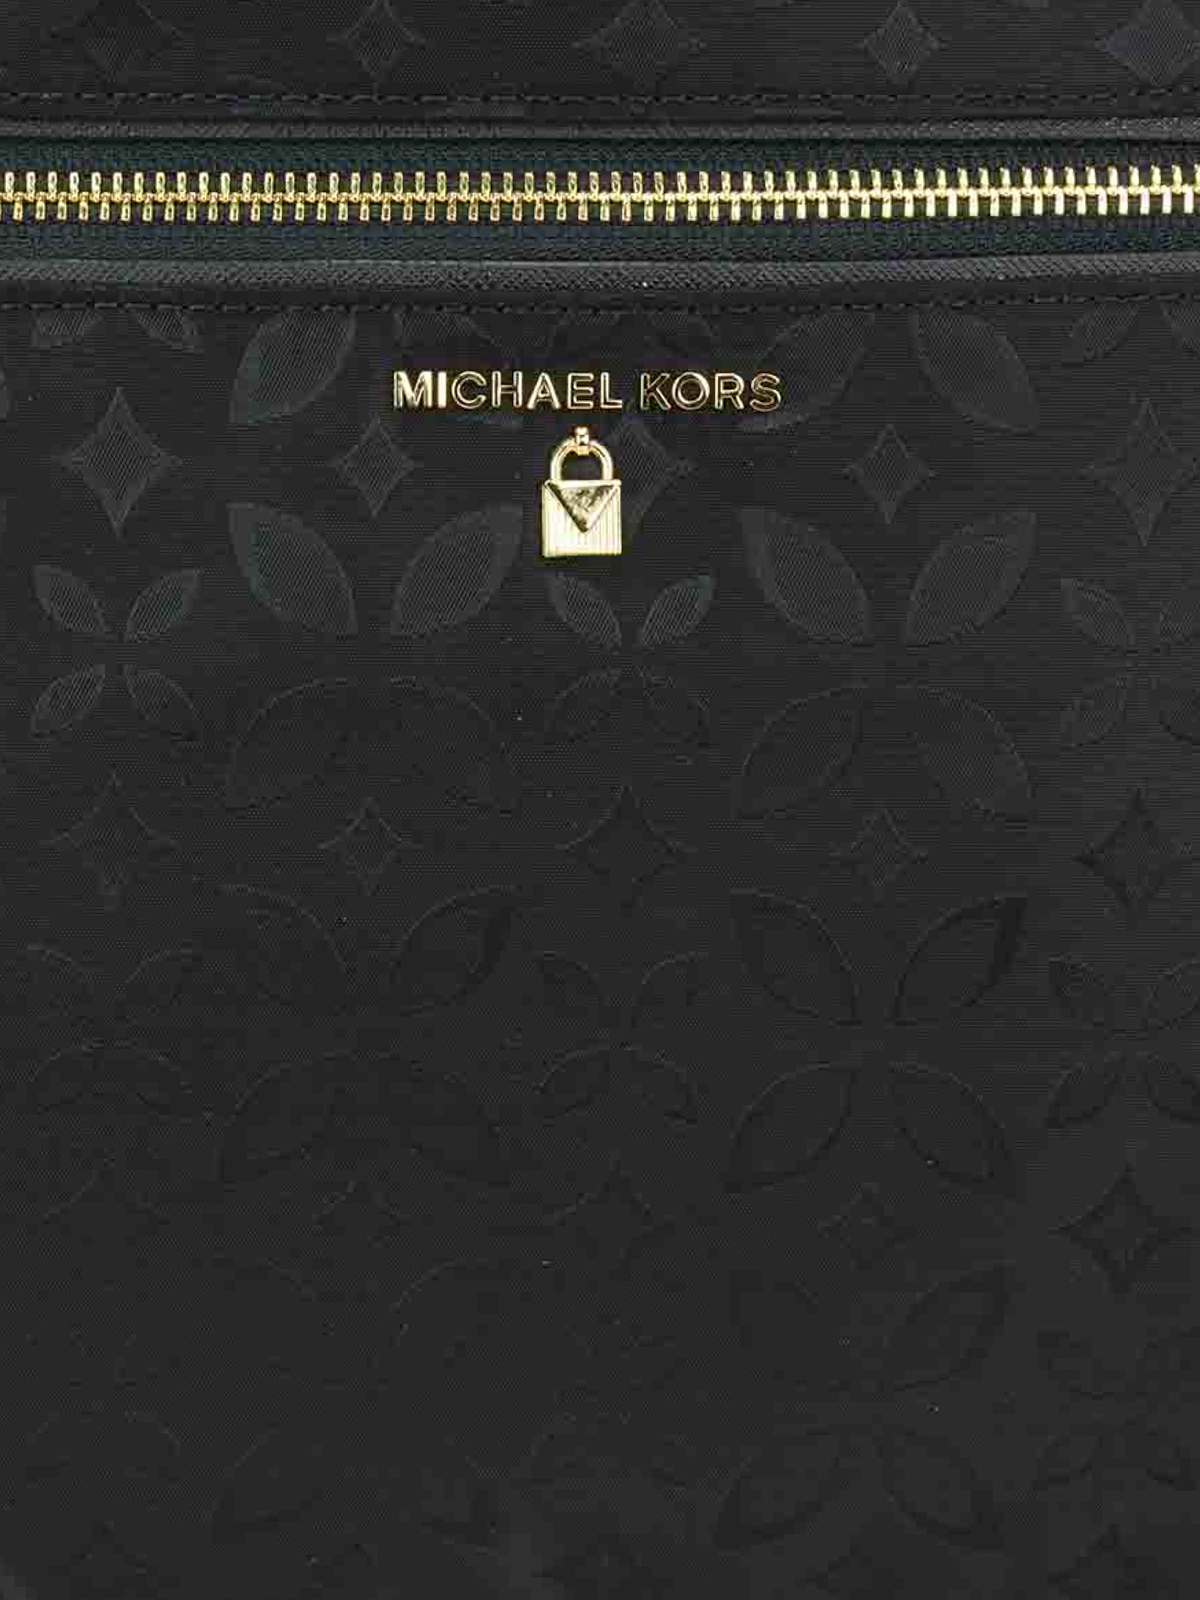 Michael Kors Kelsey Nylon Backpack in Black